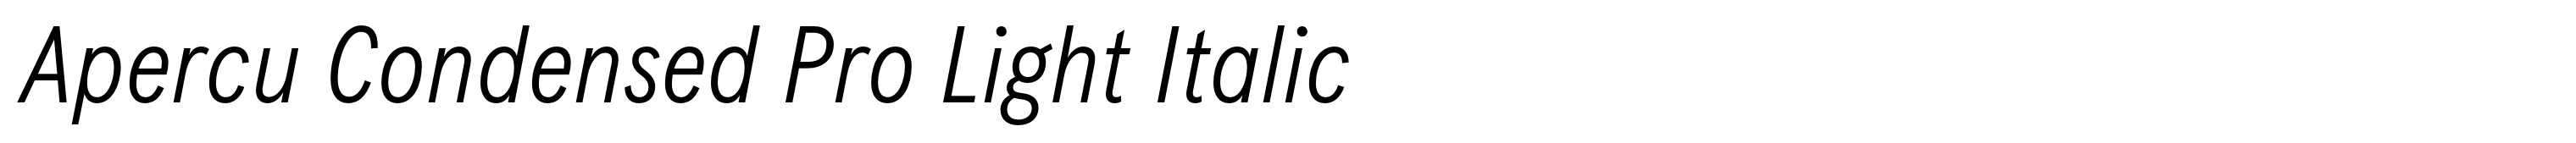 Apercu Condensed Pro Light Italic